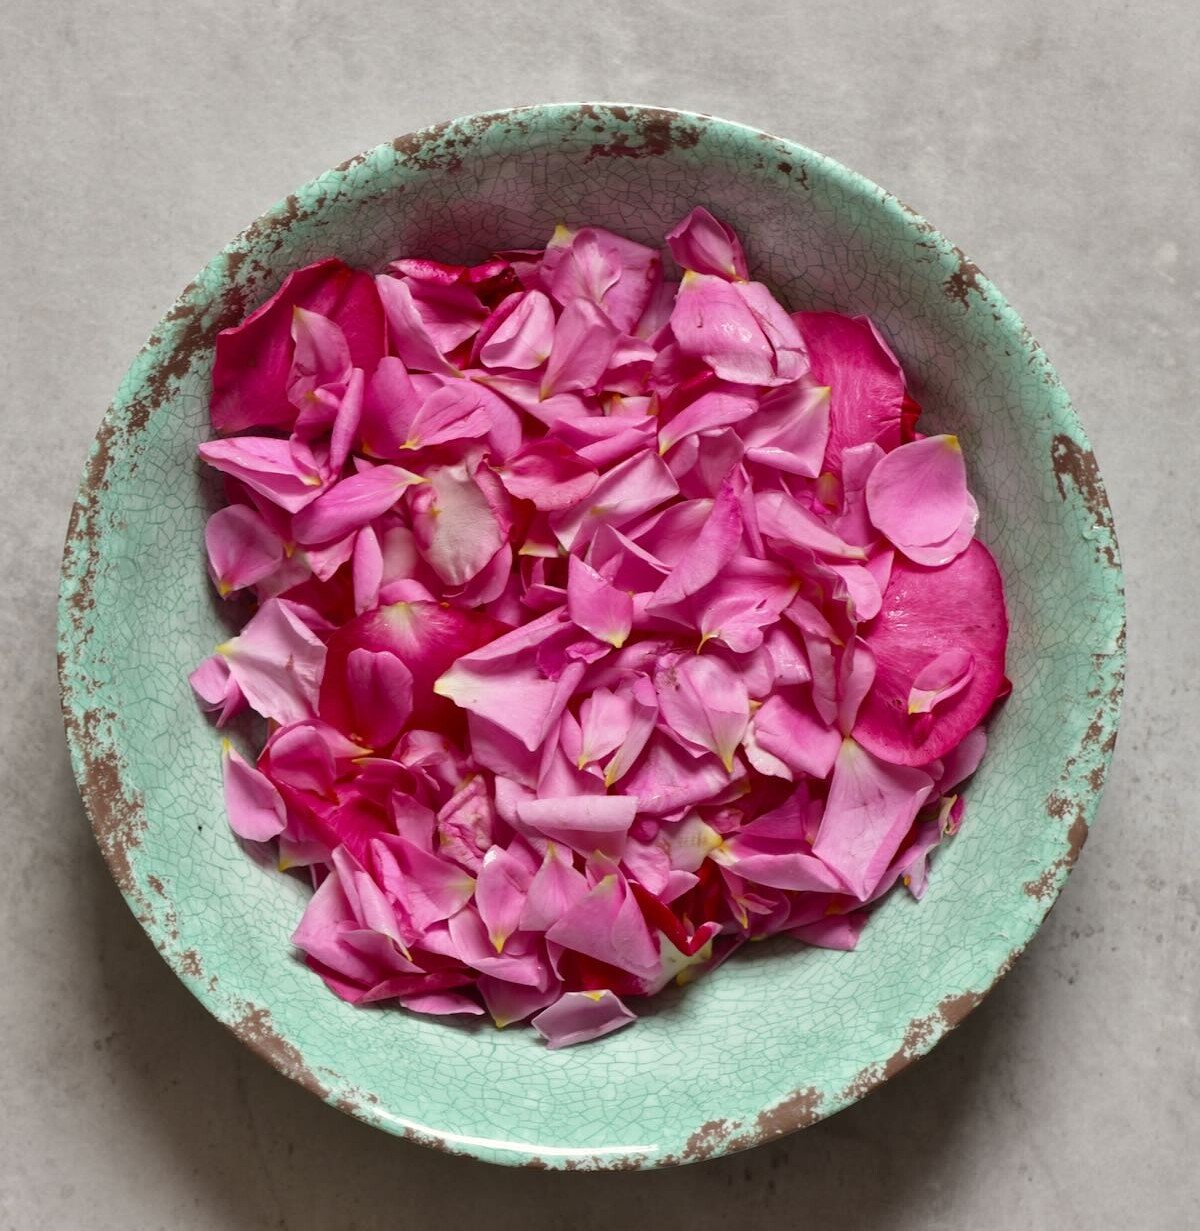 rose petals in green bowl